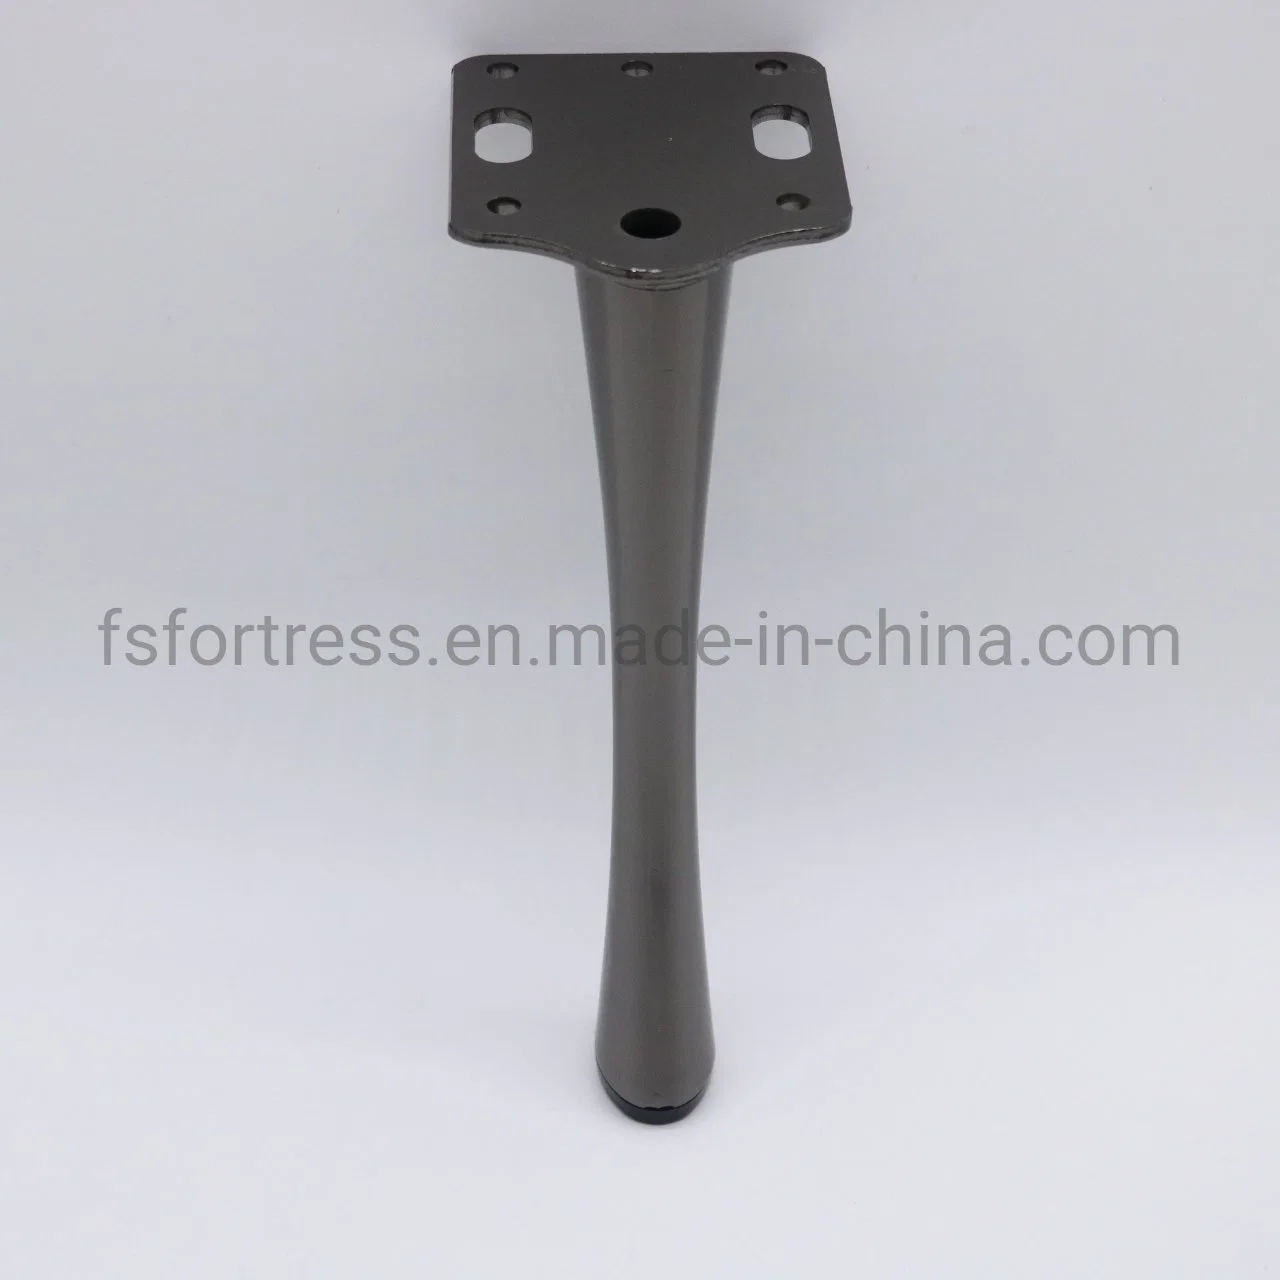 Einzigartige Form Zarte Tisch Bein Sofa Beine Möbel Hardware Zubehör Modell SL-161